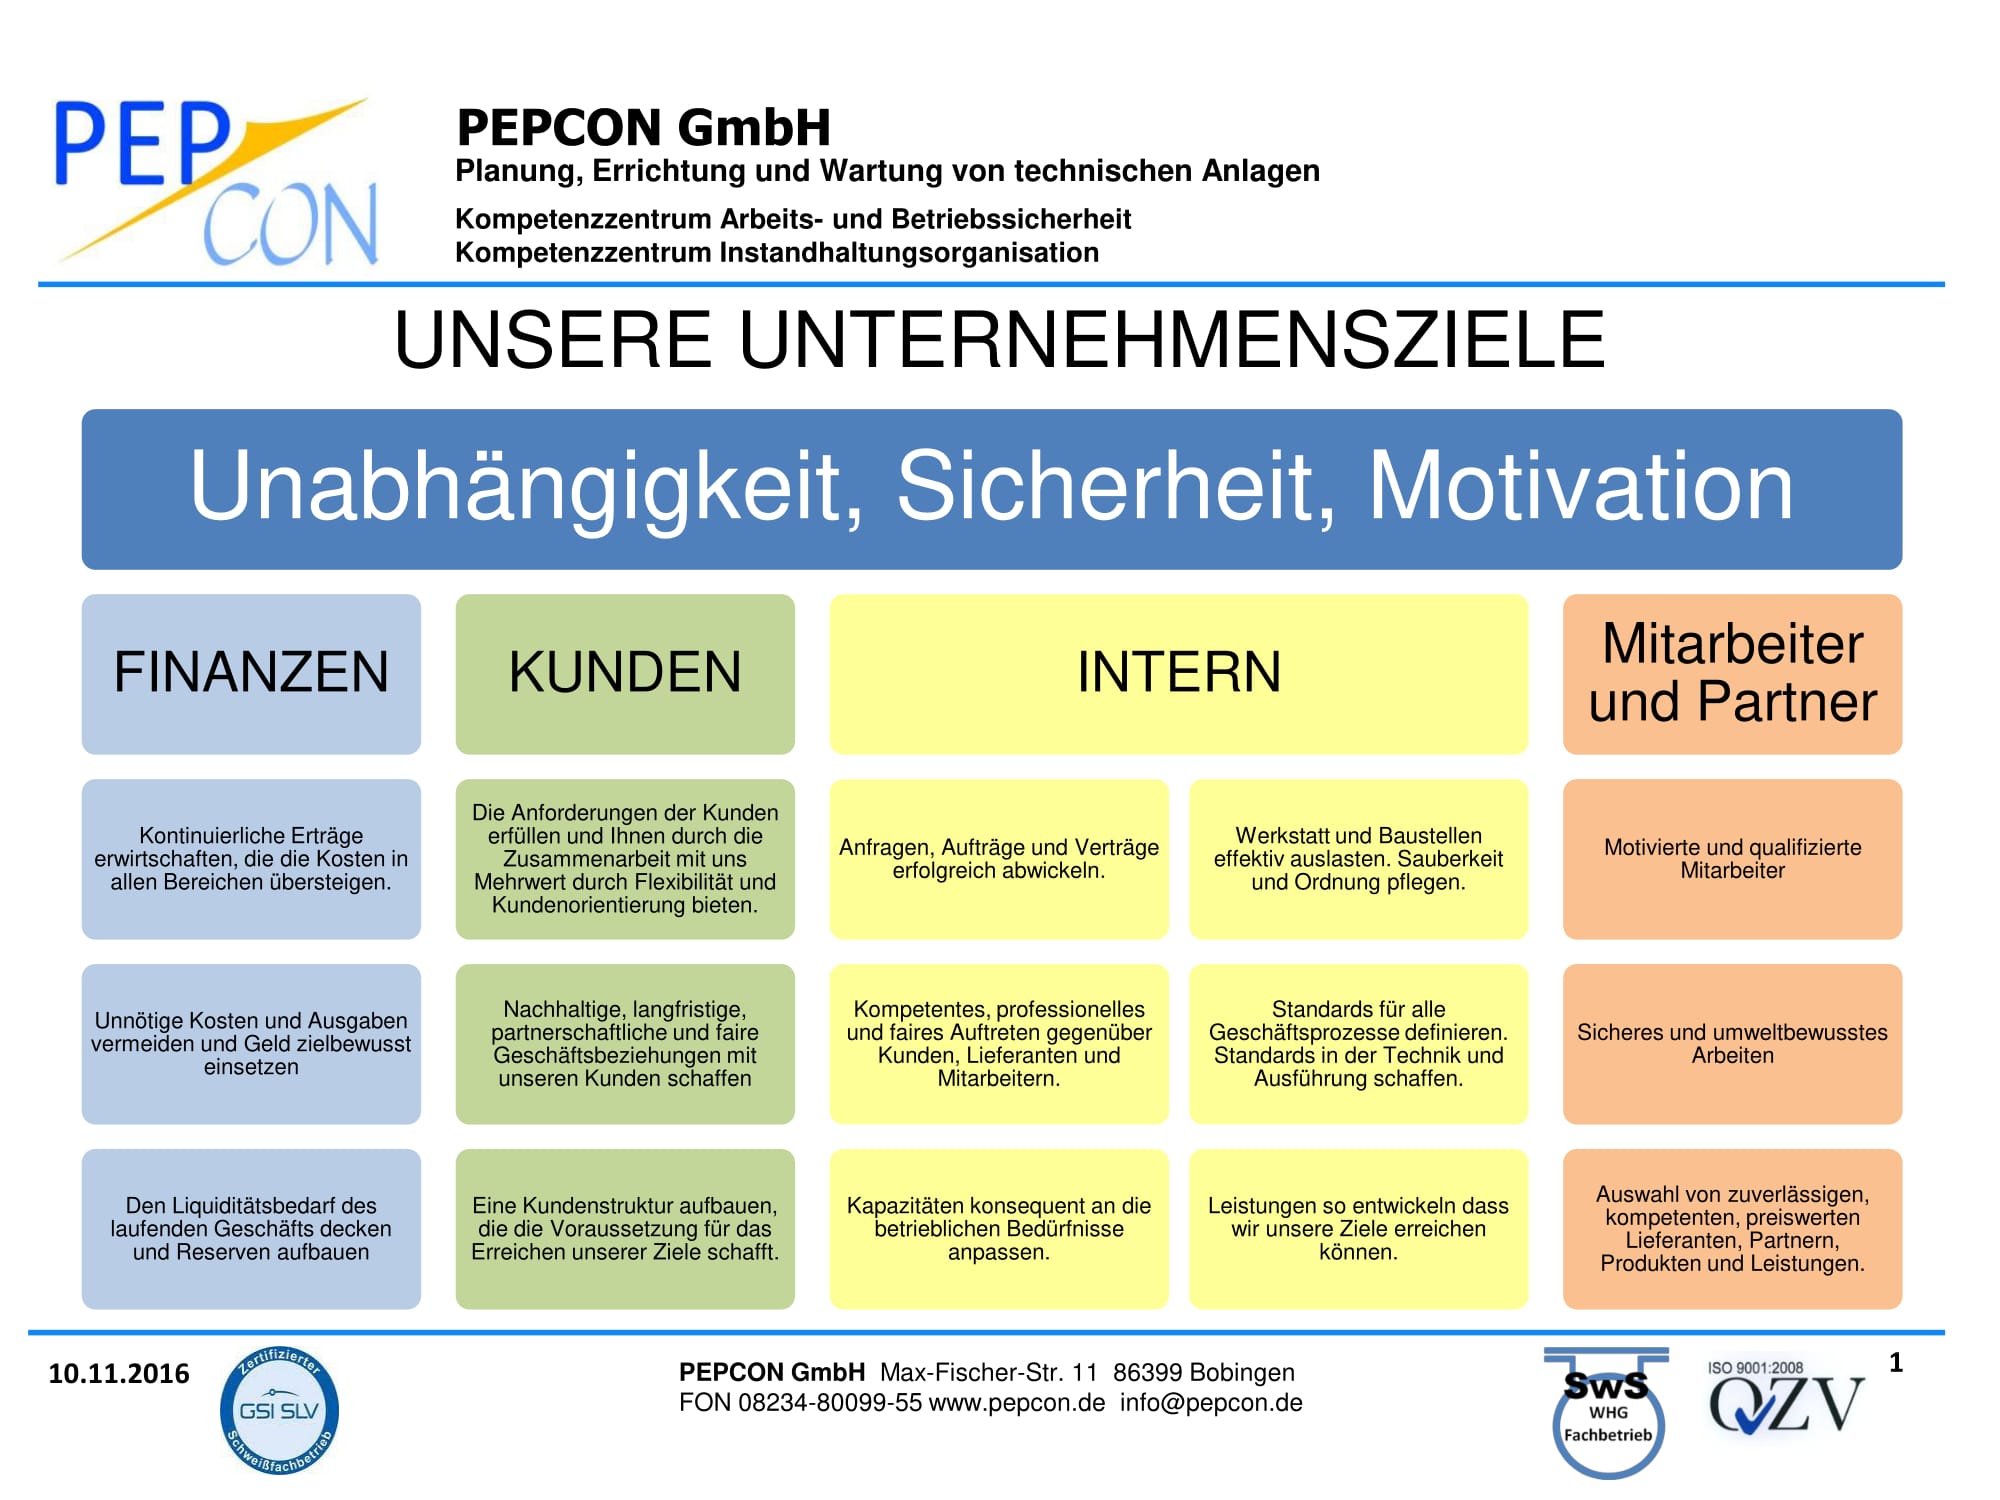 Unternehmensziele PEPCON GmbH